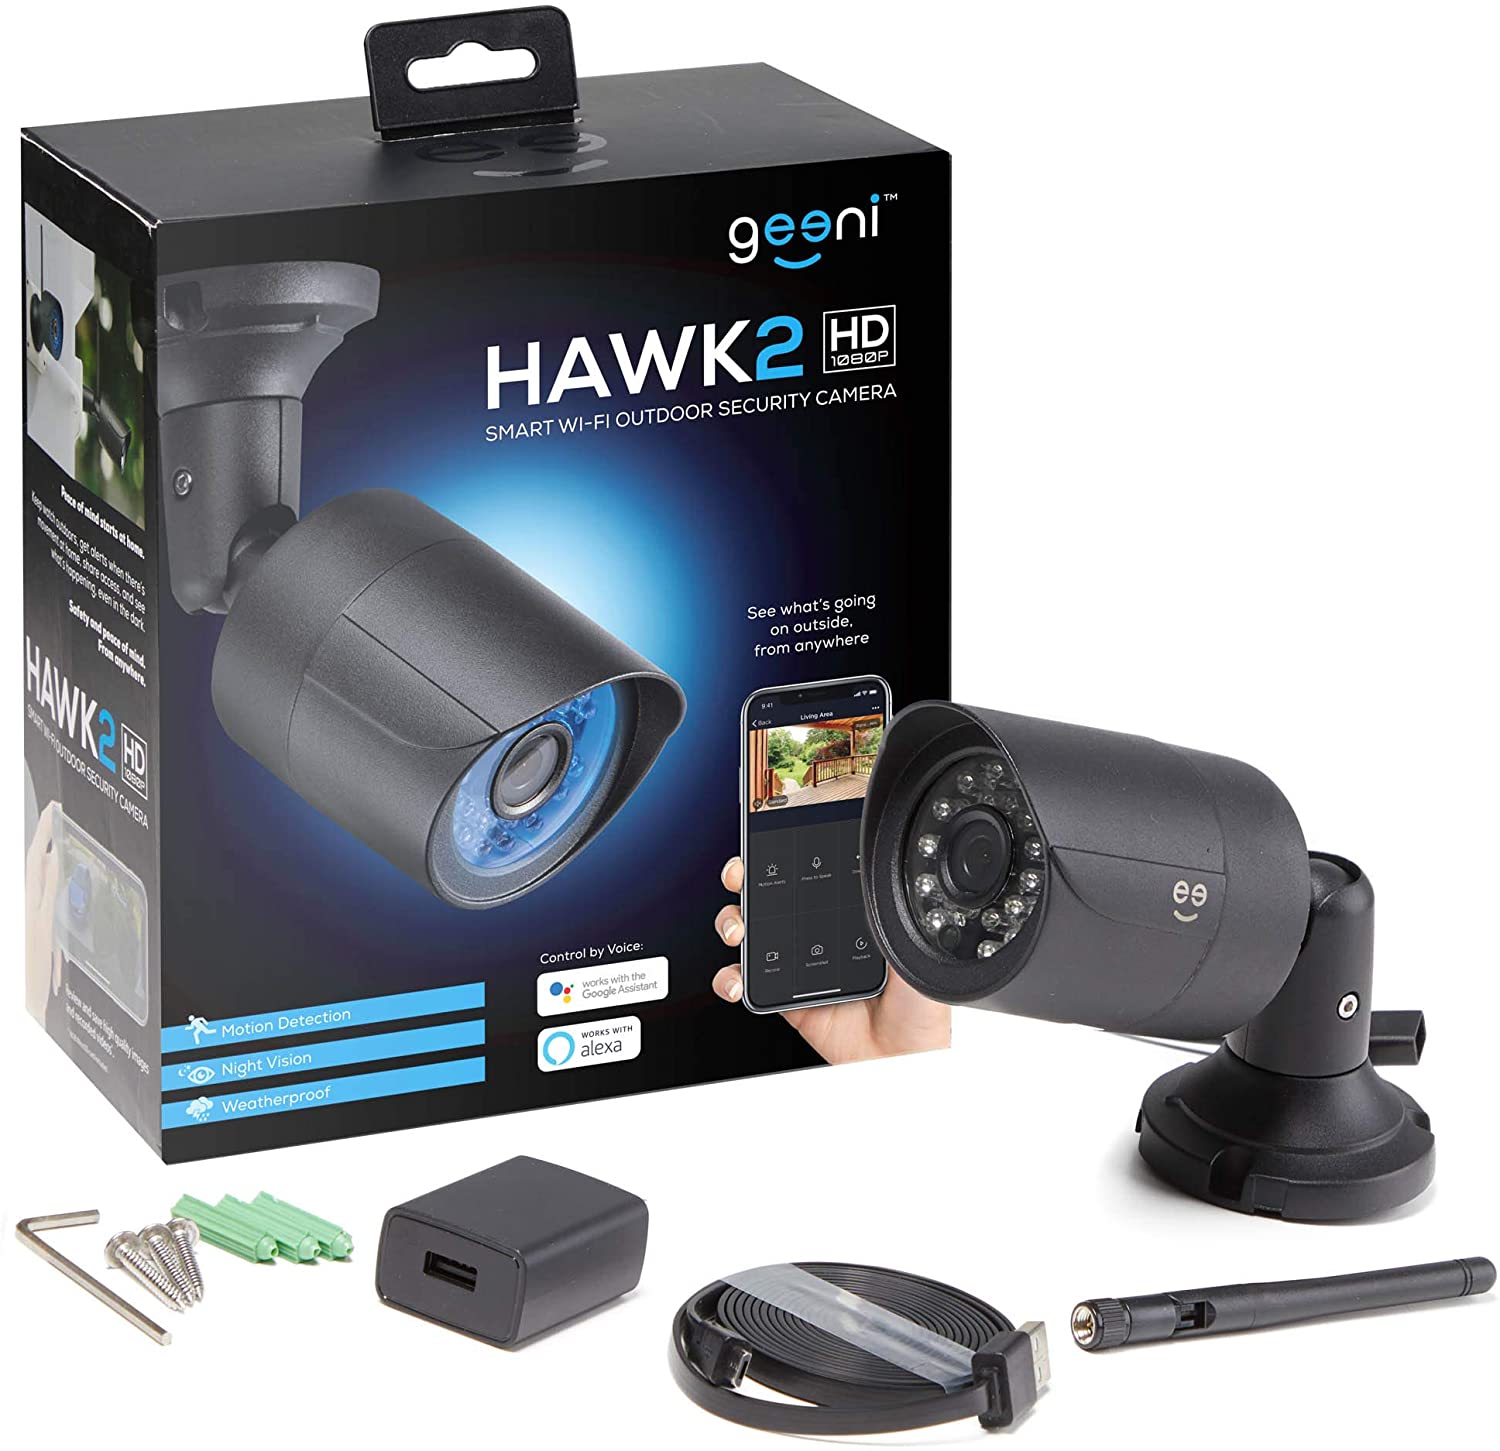 Hawk 2 Outdoor Camera